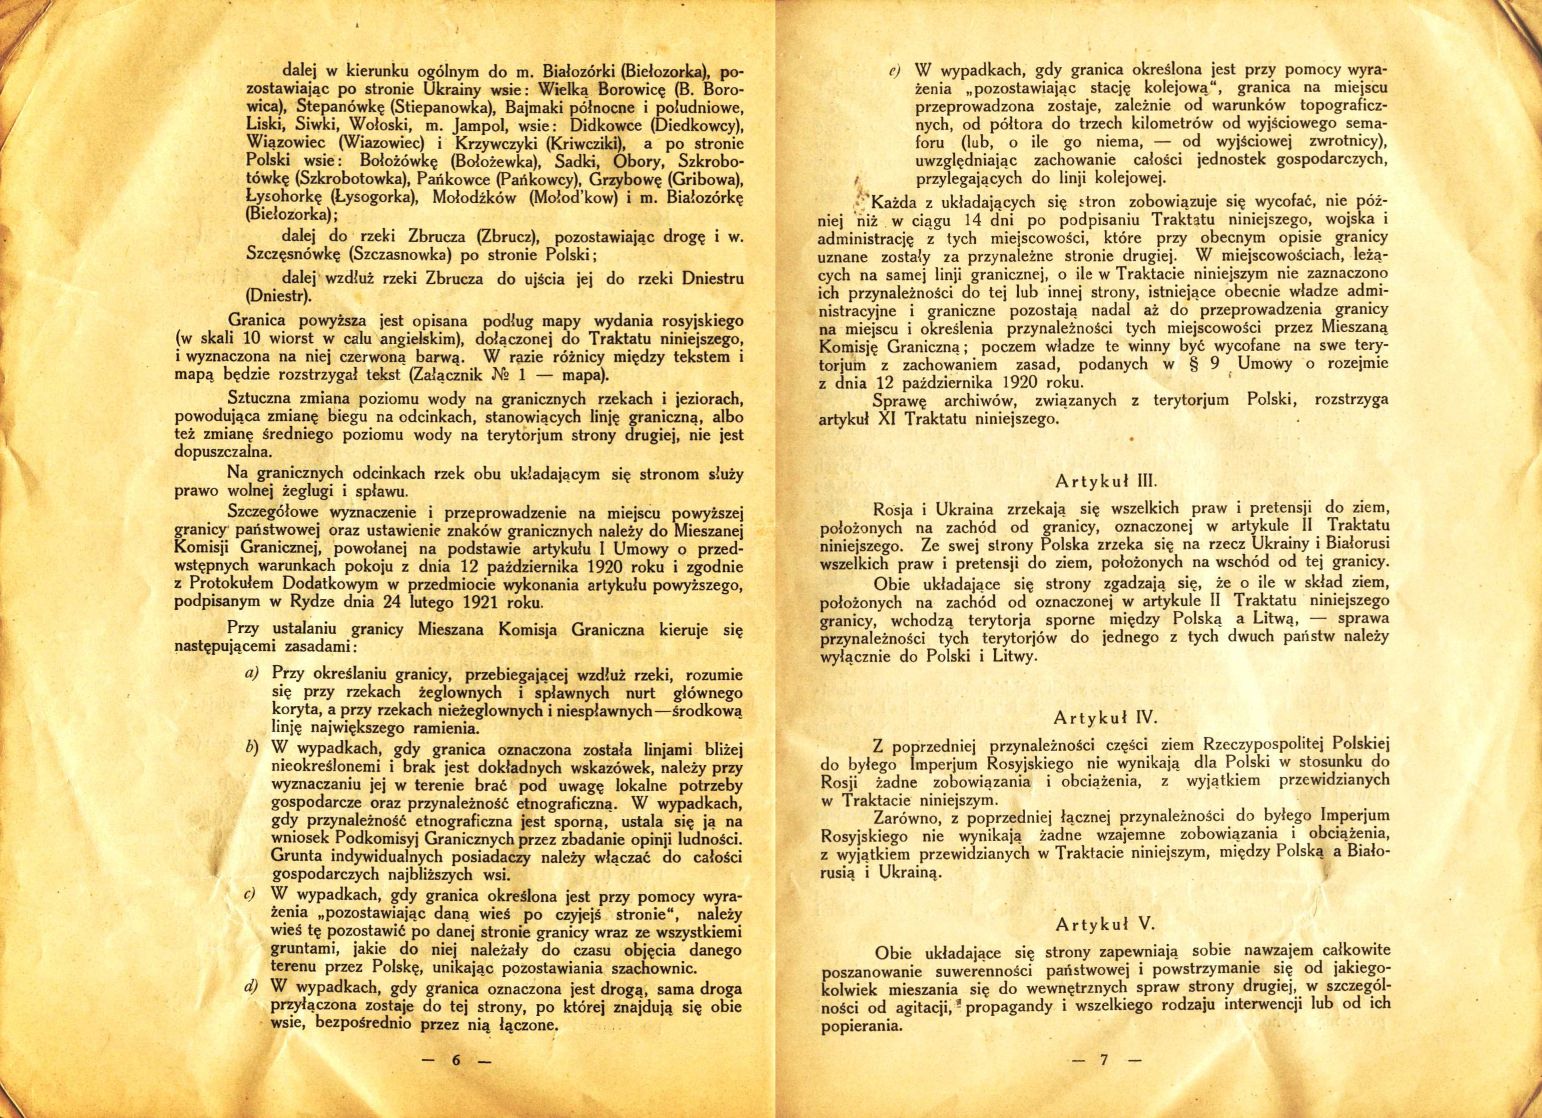 Traktat Pokoju między Polską a Rosją i Ukrainą podpisany w Rydze dnia 18 marca 1921 roku, s. 6-7, Akta Jana Dąbskiego, sygn. 5